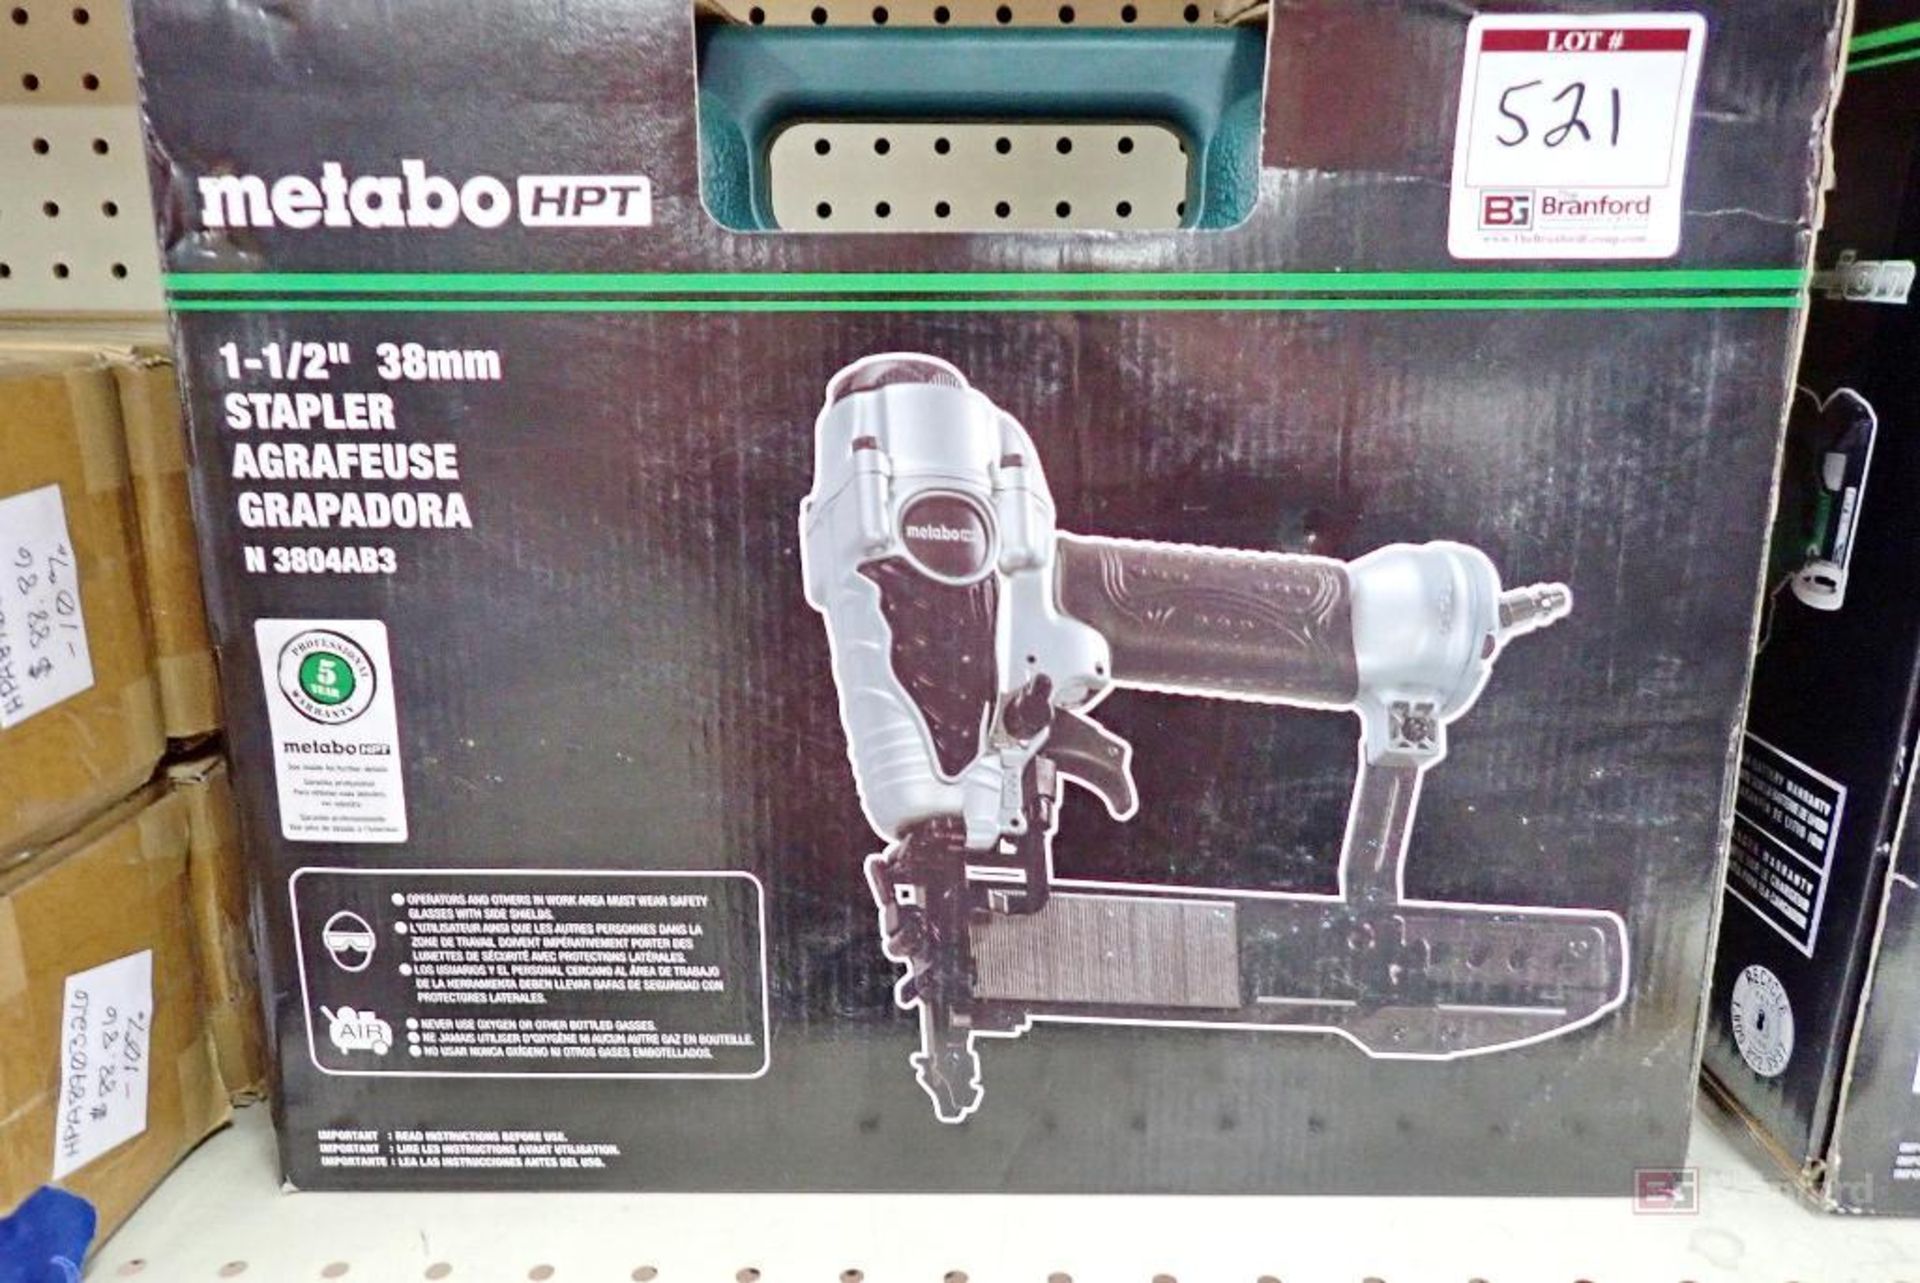 Metabo HPT N3804AB3 1-1/2" 38mm Stapler